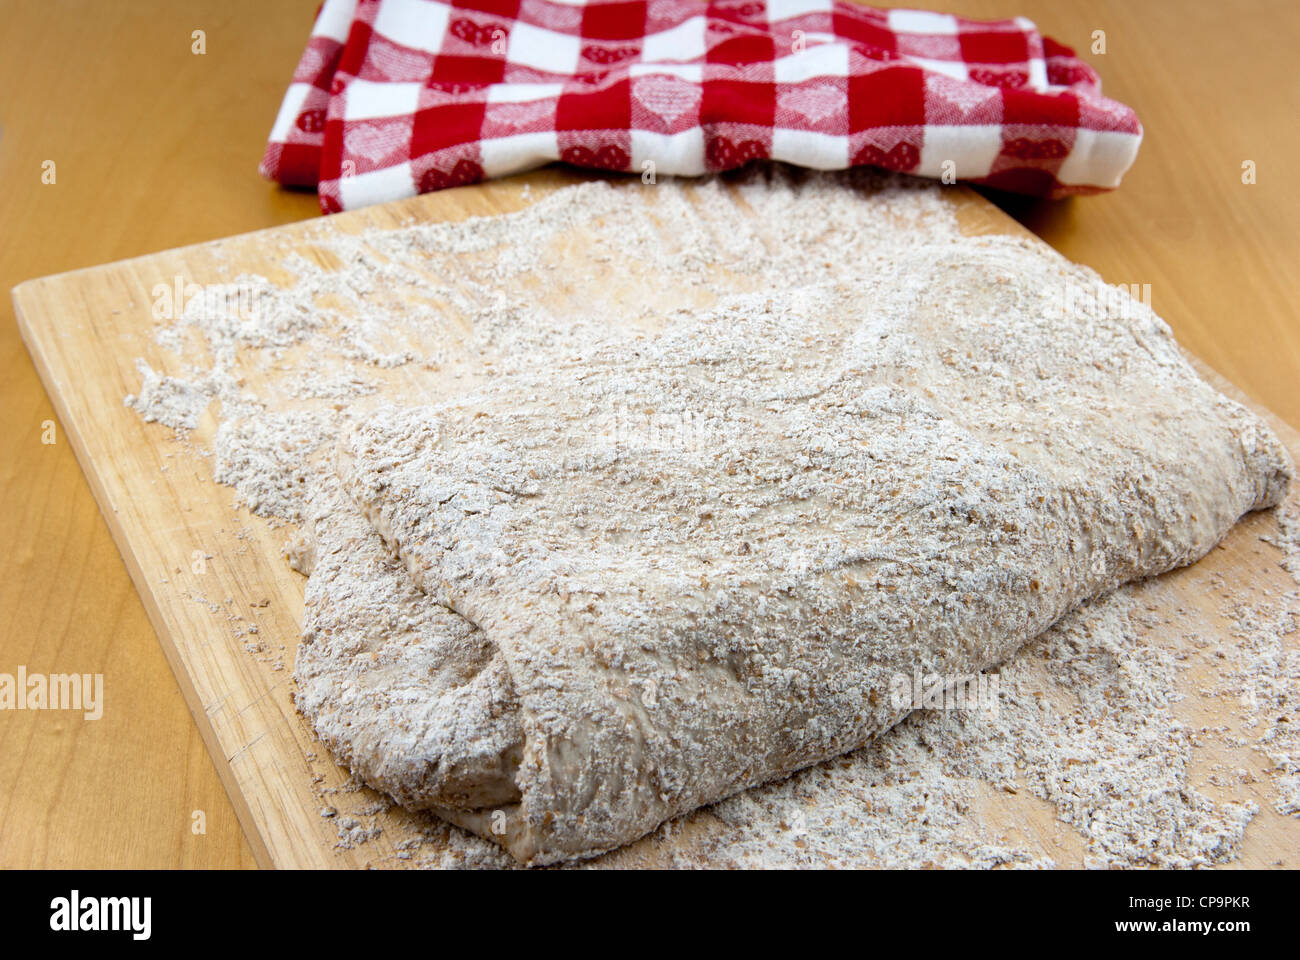 Étape 4 dans la préparation d'un pas de pétrir le pain au levain artisan, pliage de la pâte étirée. Banque D'Images